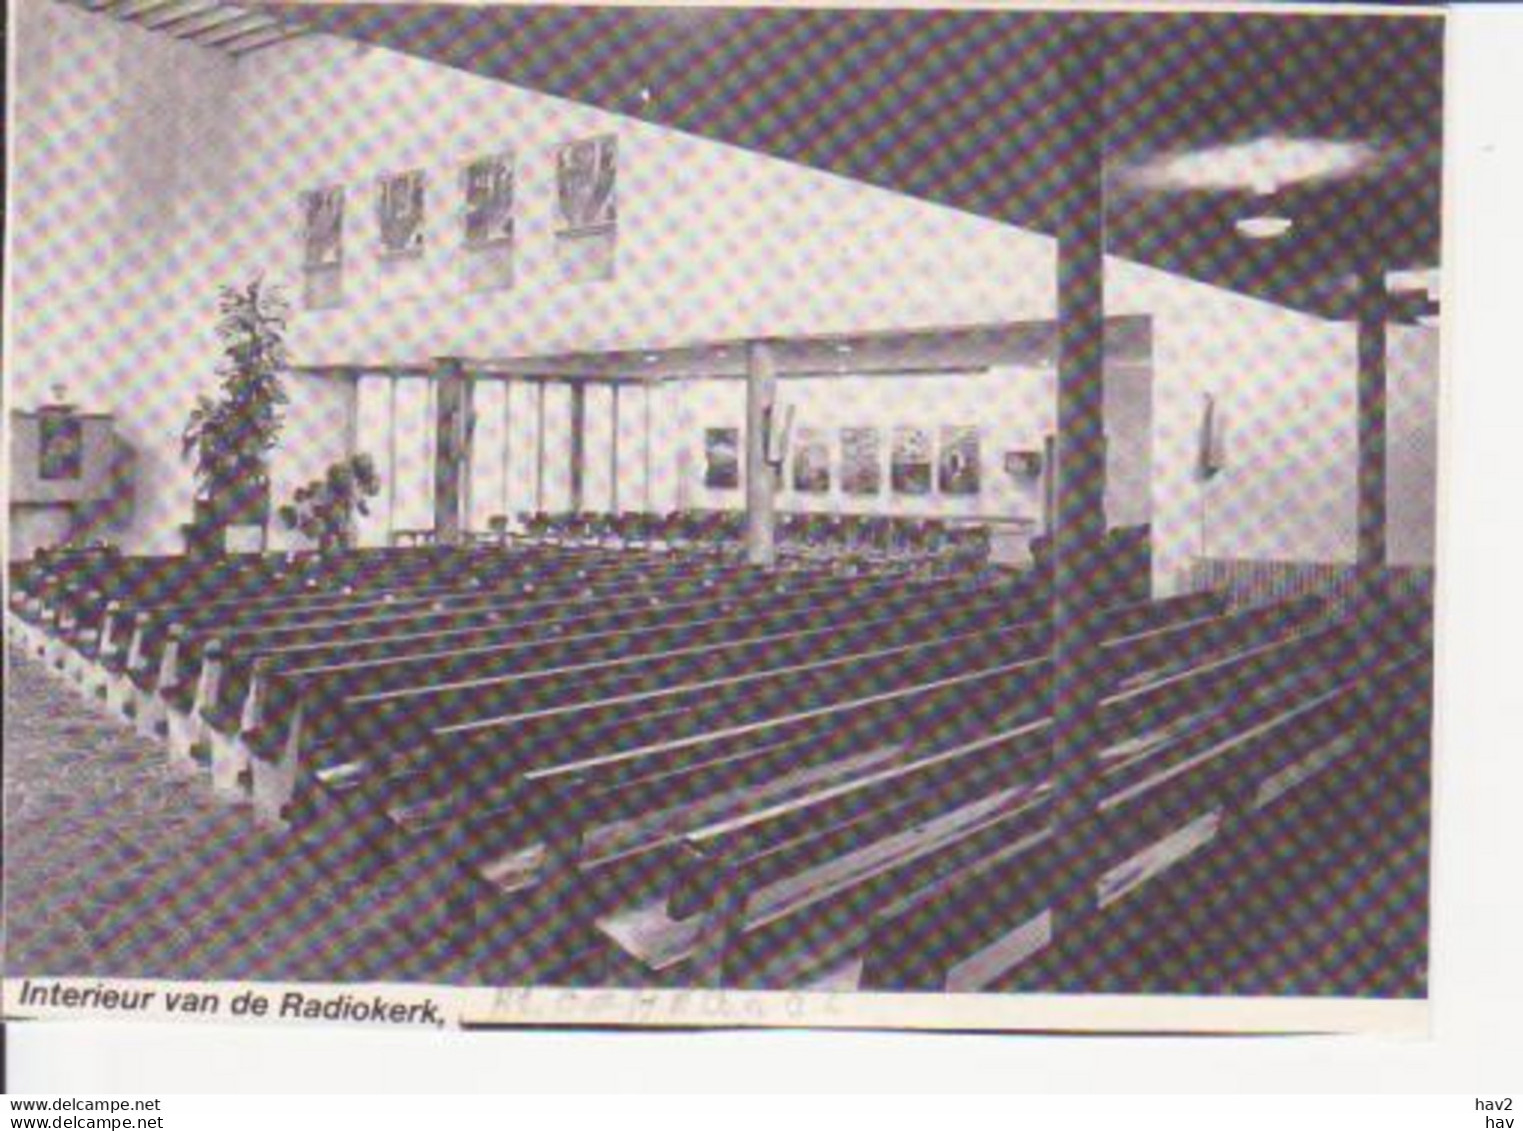 Bloemendaal Radio Kerk Interieur RY 6816 - Bloemendaal